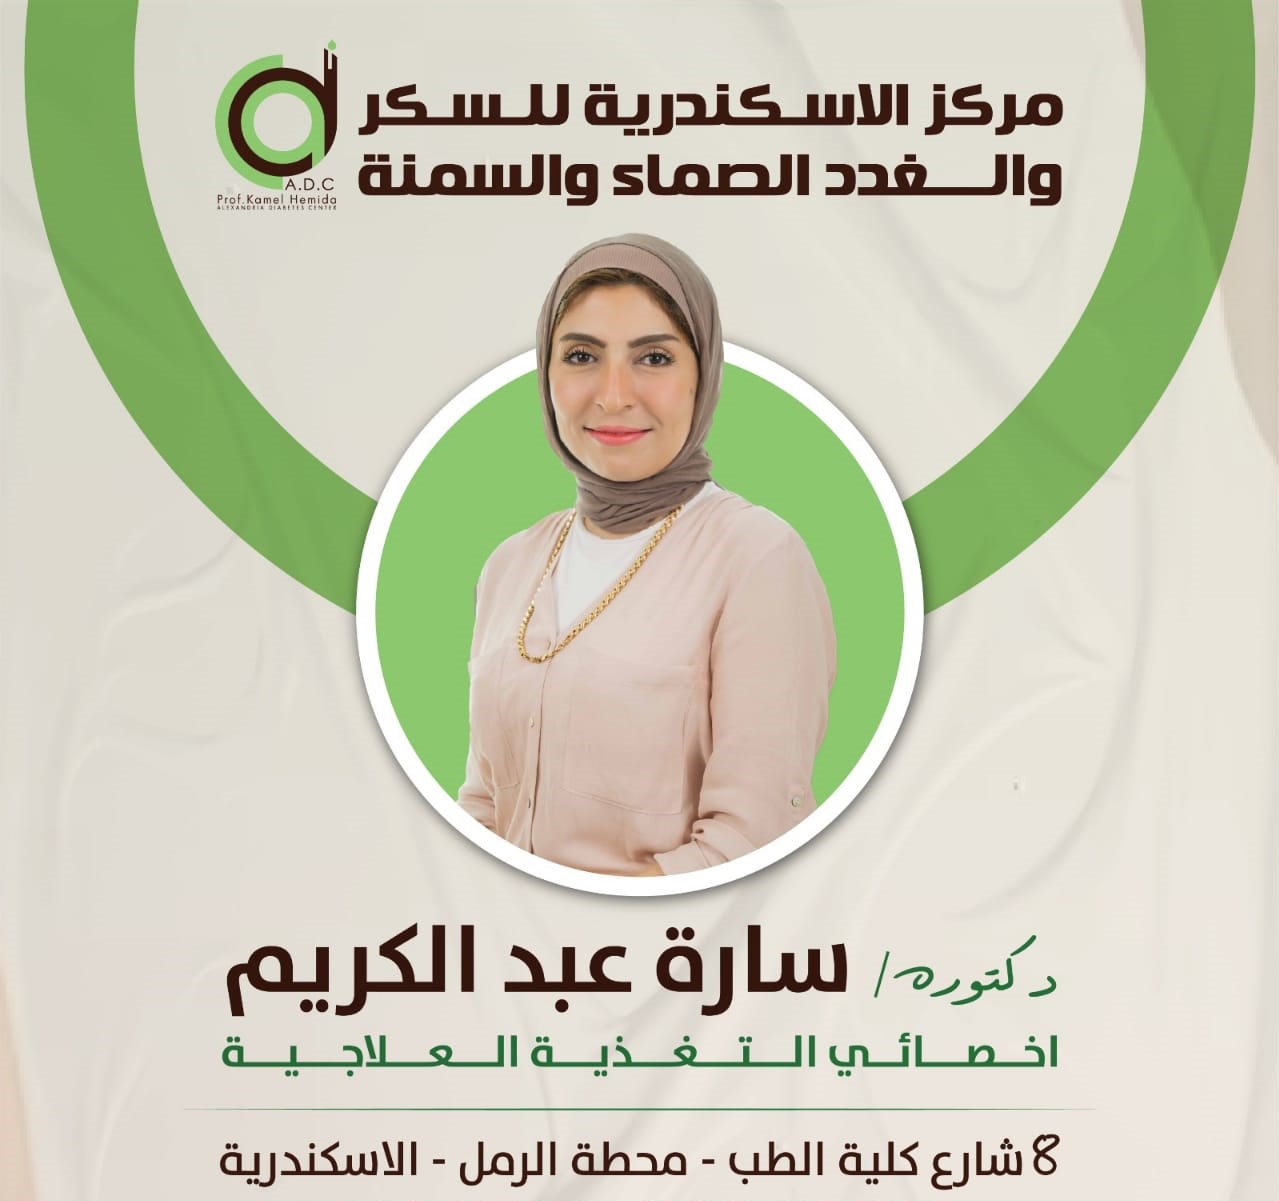 Dr. Sara Abdel Karim